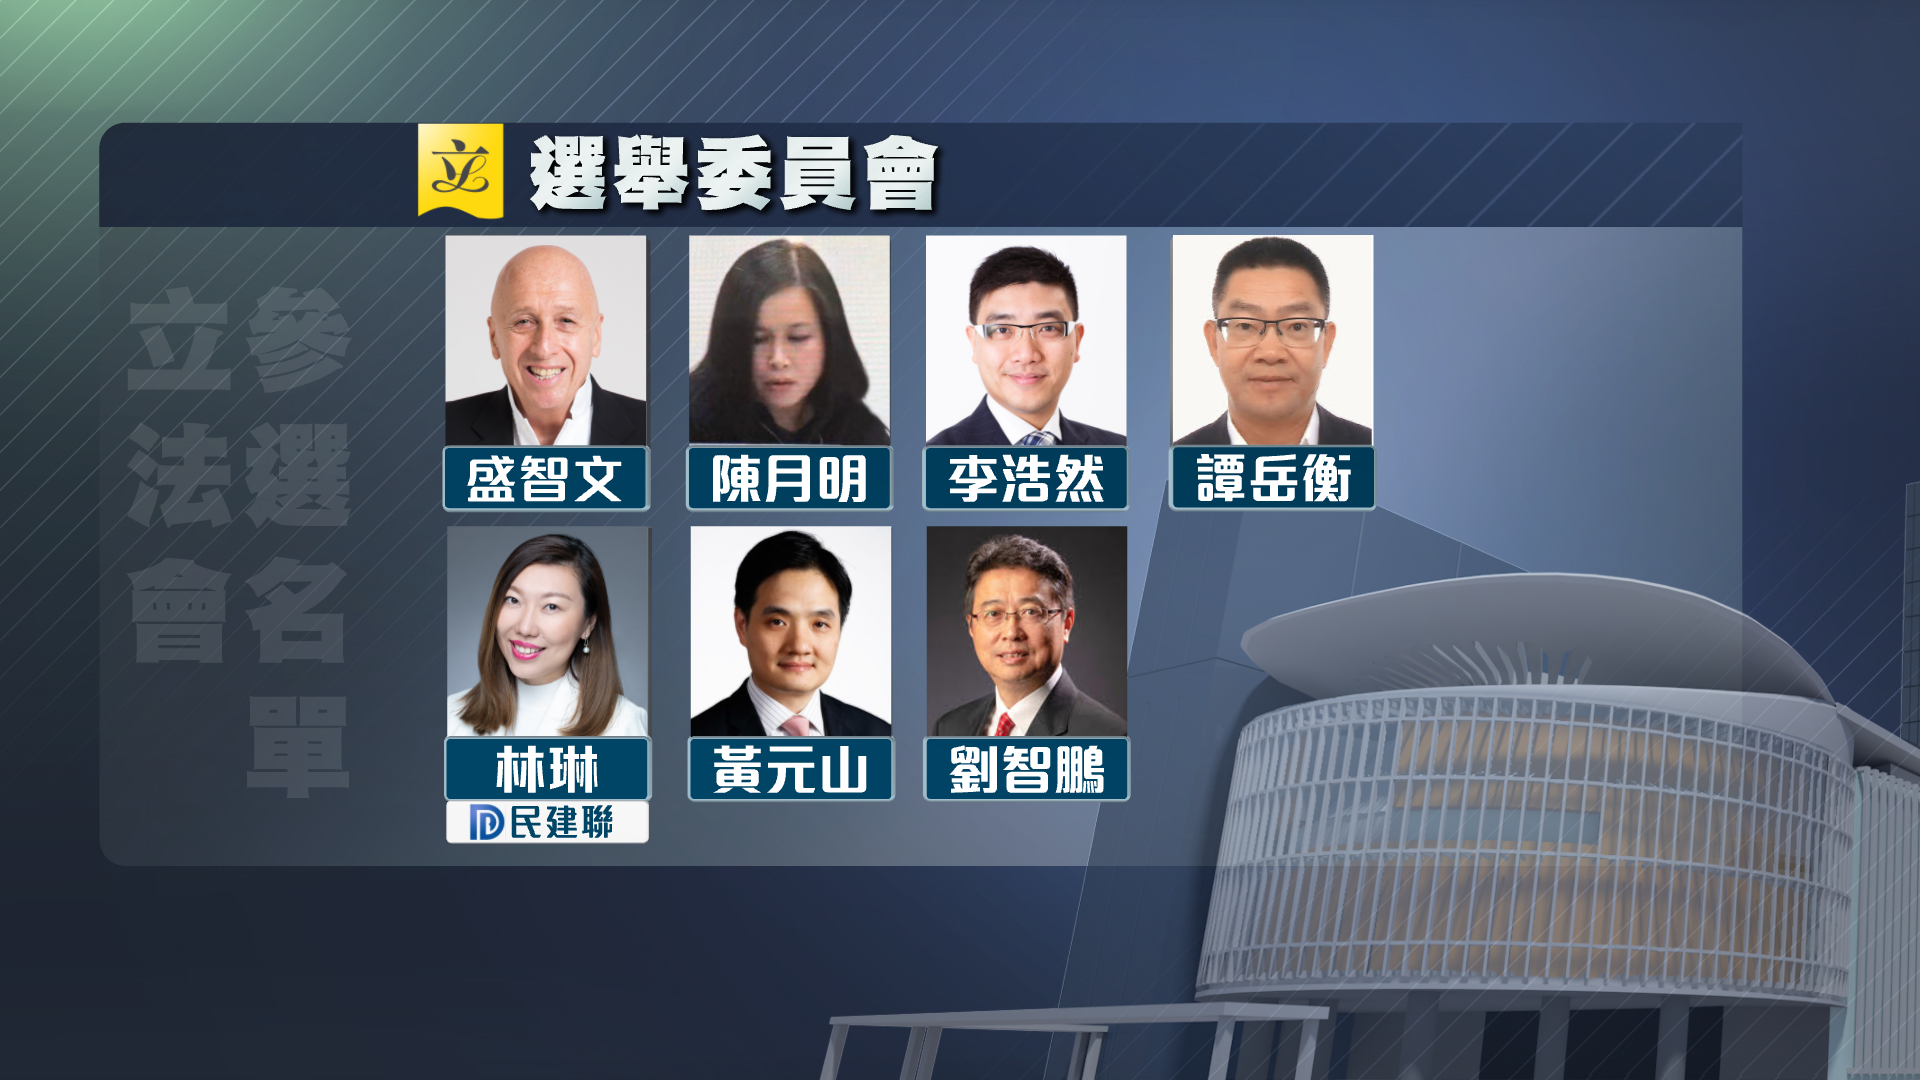 【附名單】立法會選舉今日接獲11人報名